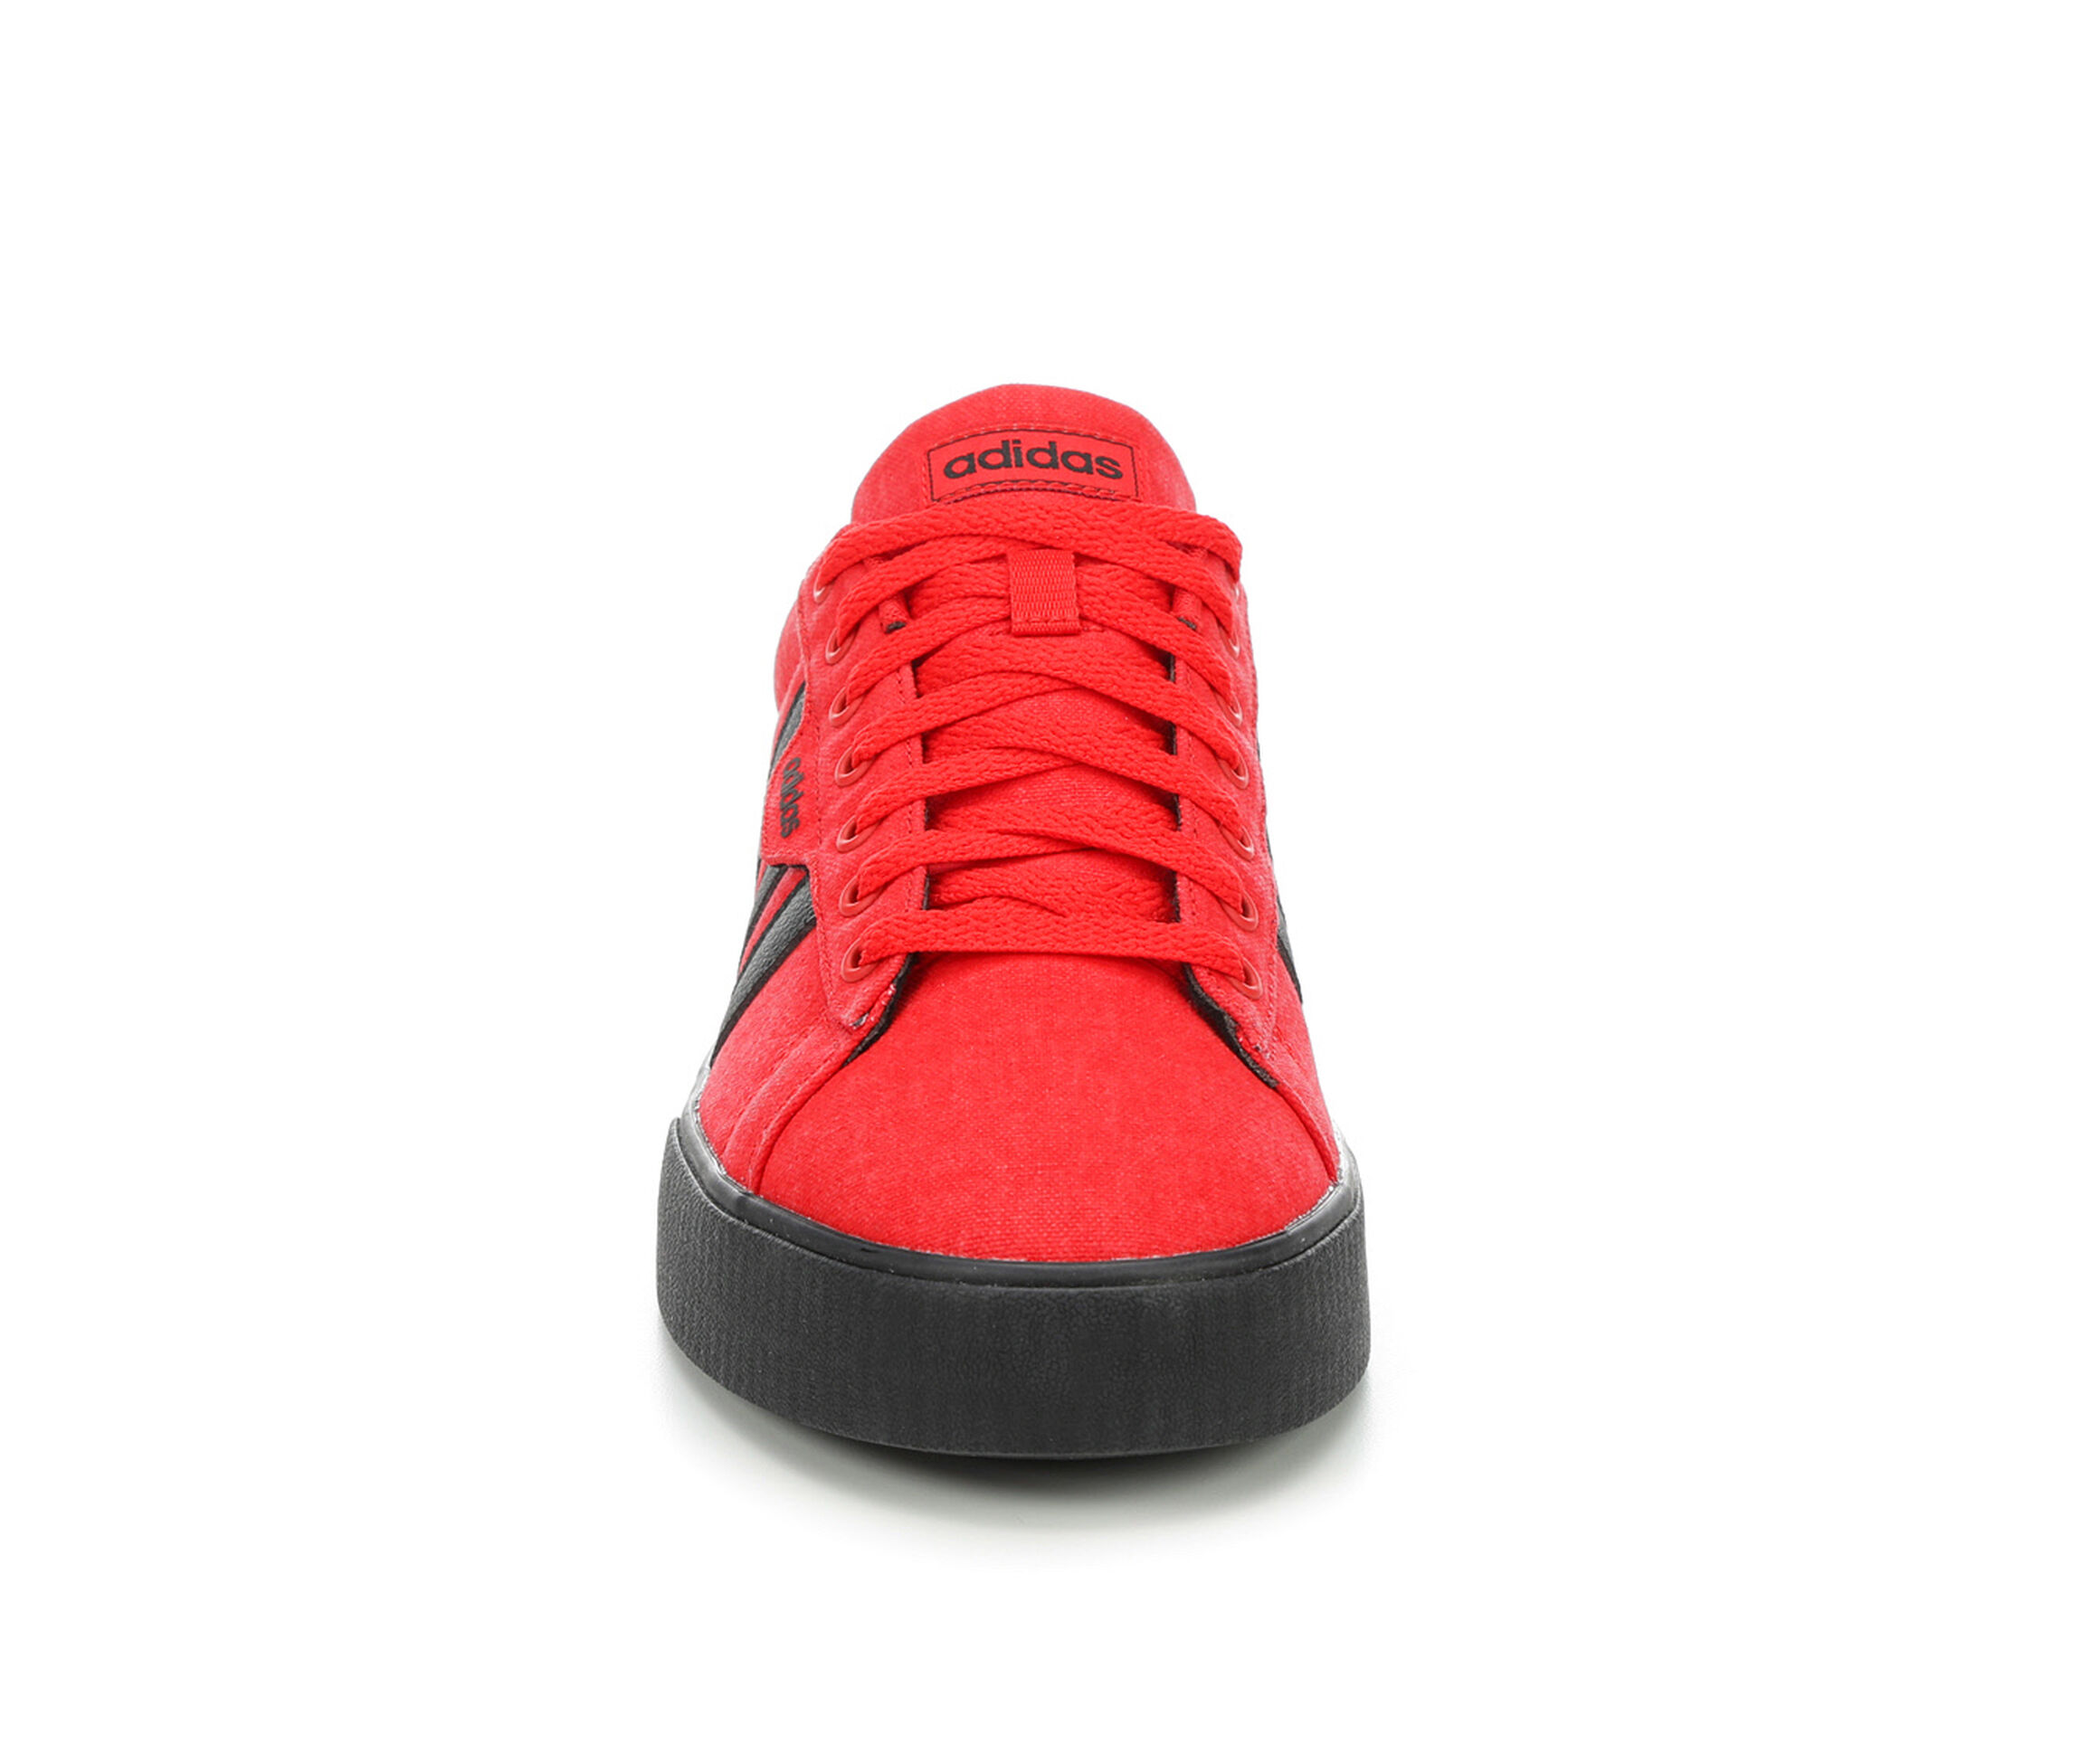 Adidas Shoes | Adidas Sneakers & Footwear Online | Sh...